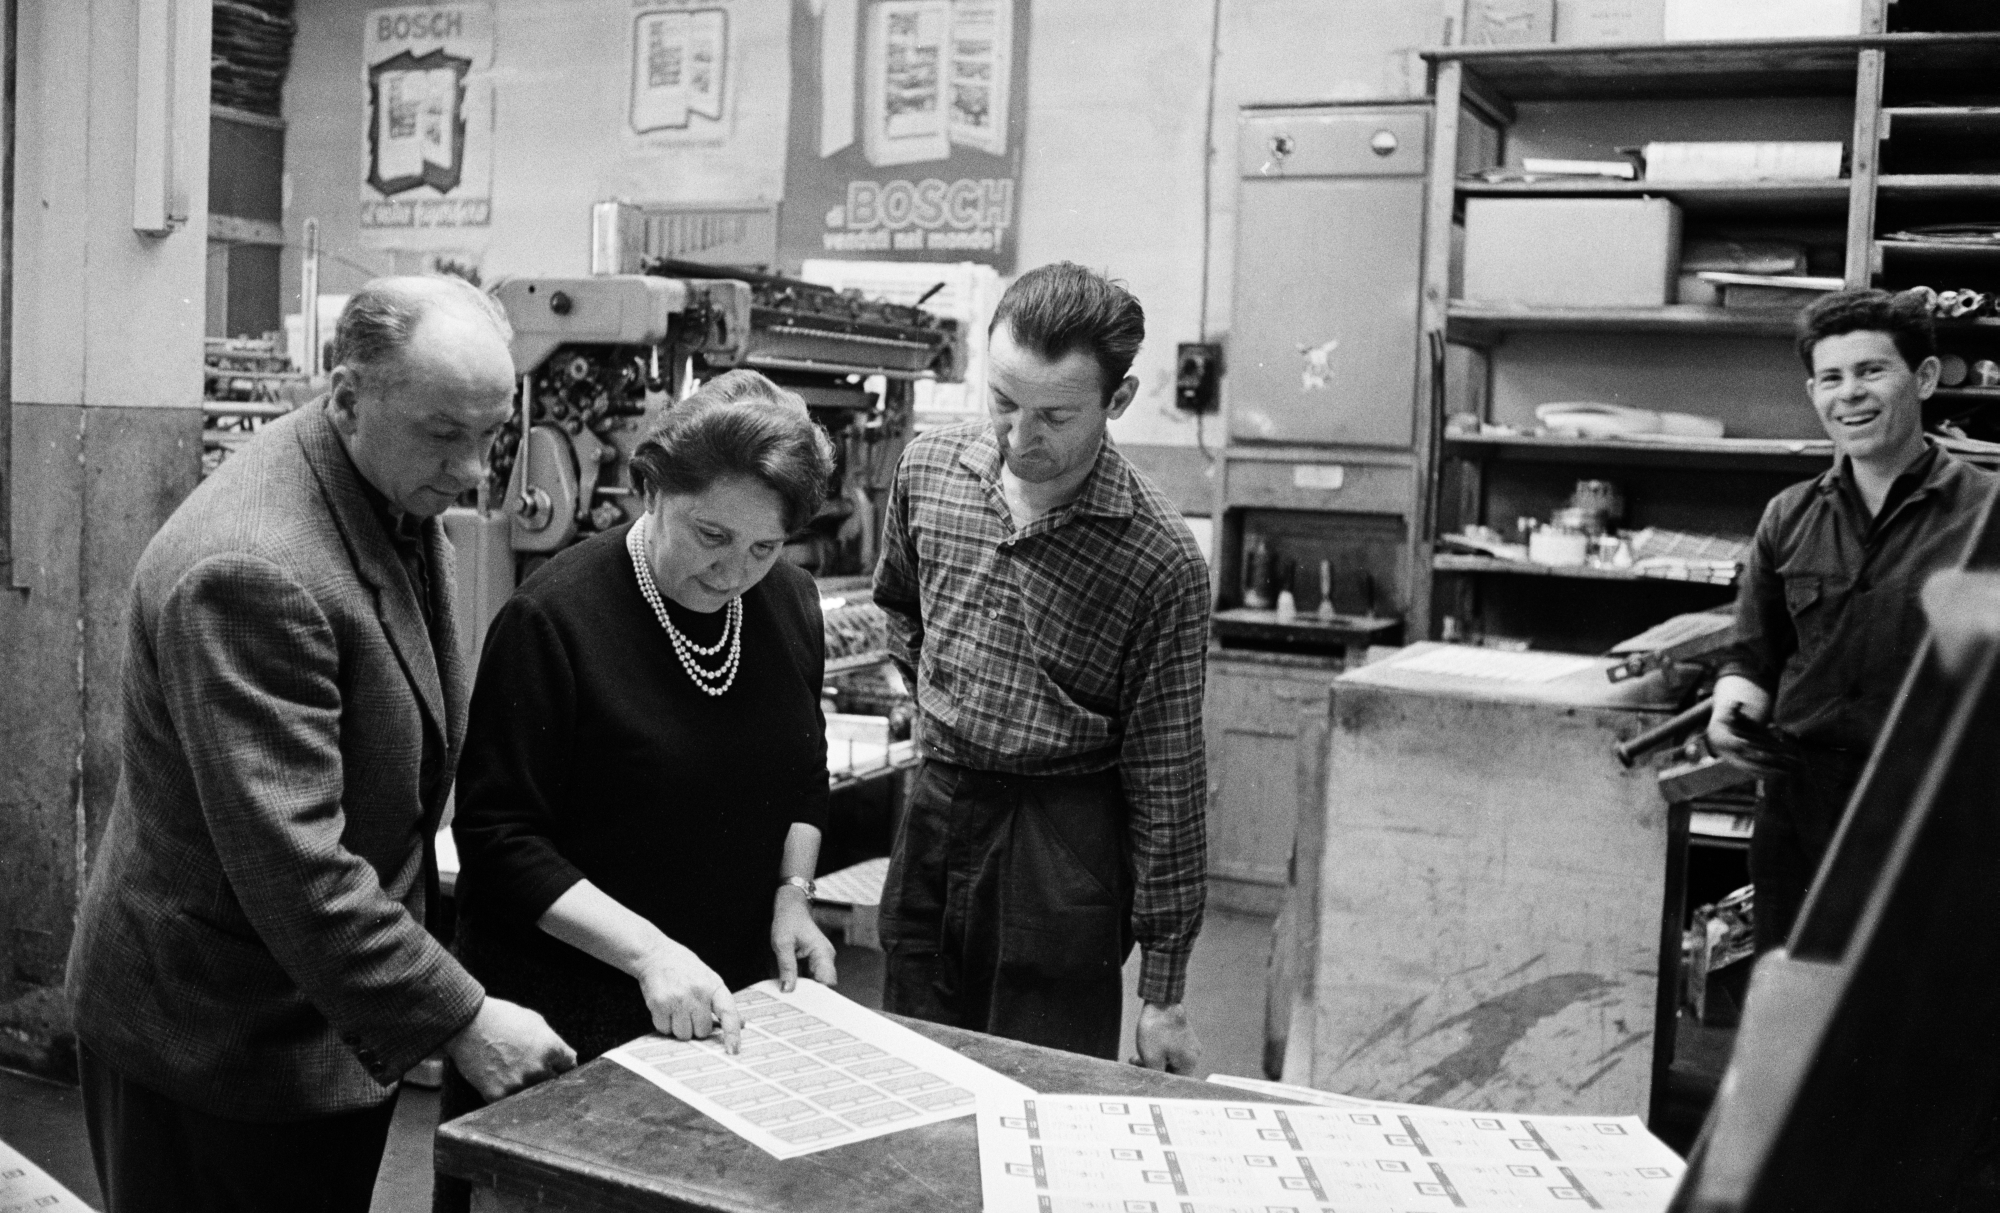 La proprietaria della tipografia Gallati Alfonsina Belloni, Milano, 1 aprile 1961 Fotografia di Giuseppe Giovi - Publifoto. Archivio Publifoto Intesa Sanpaolo